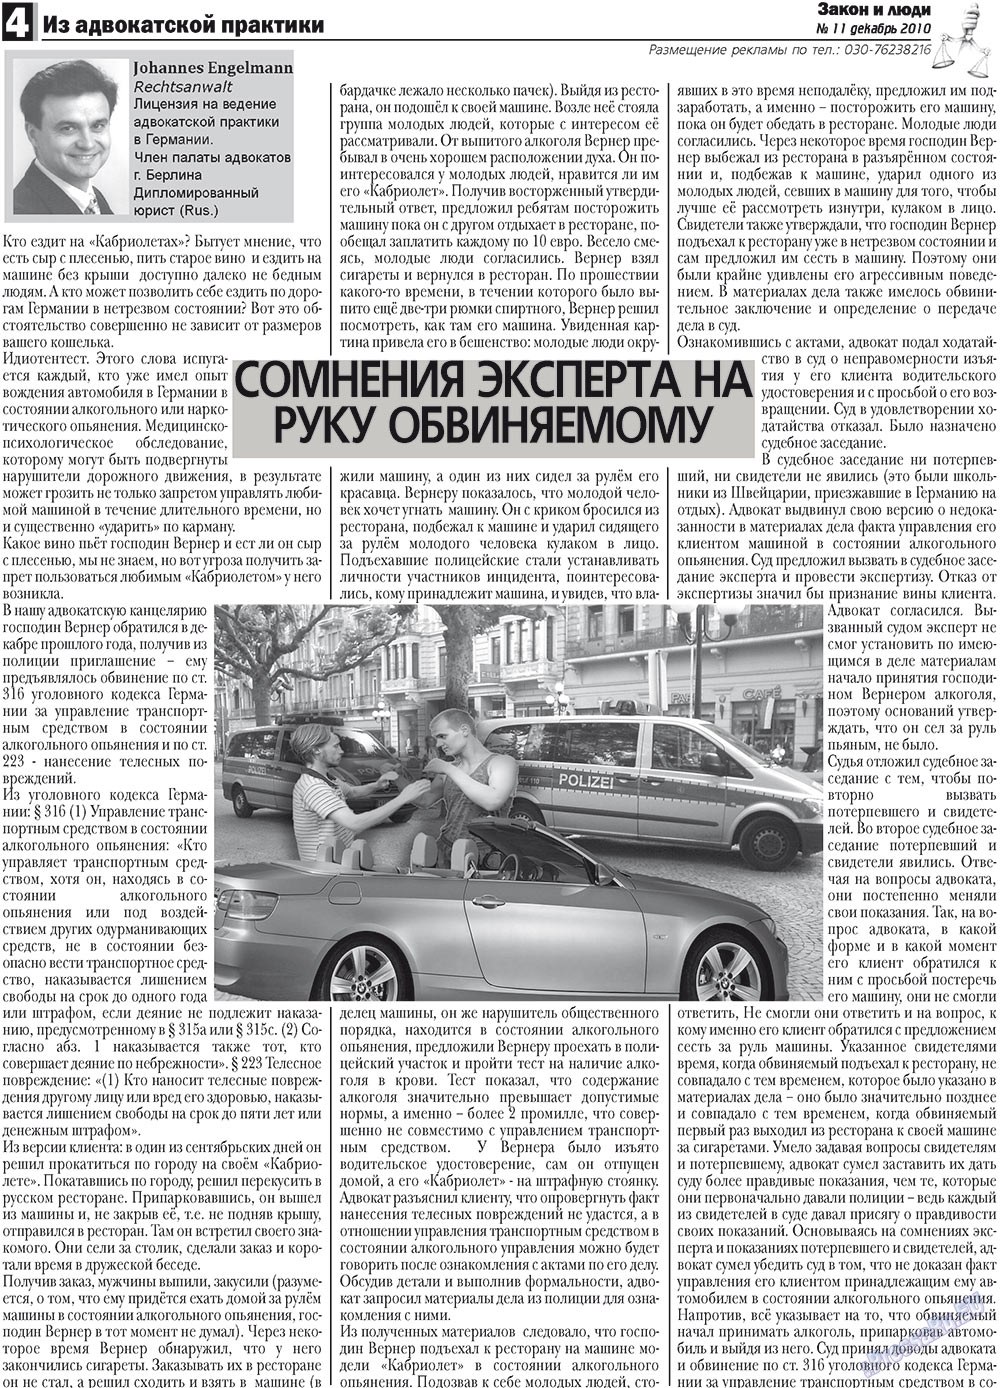 Закон и люди, газета. 2010 №11 стр.4